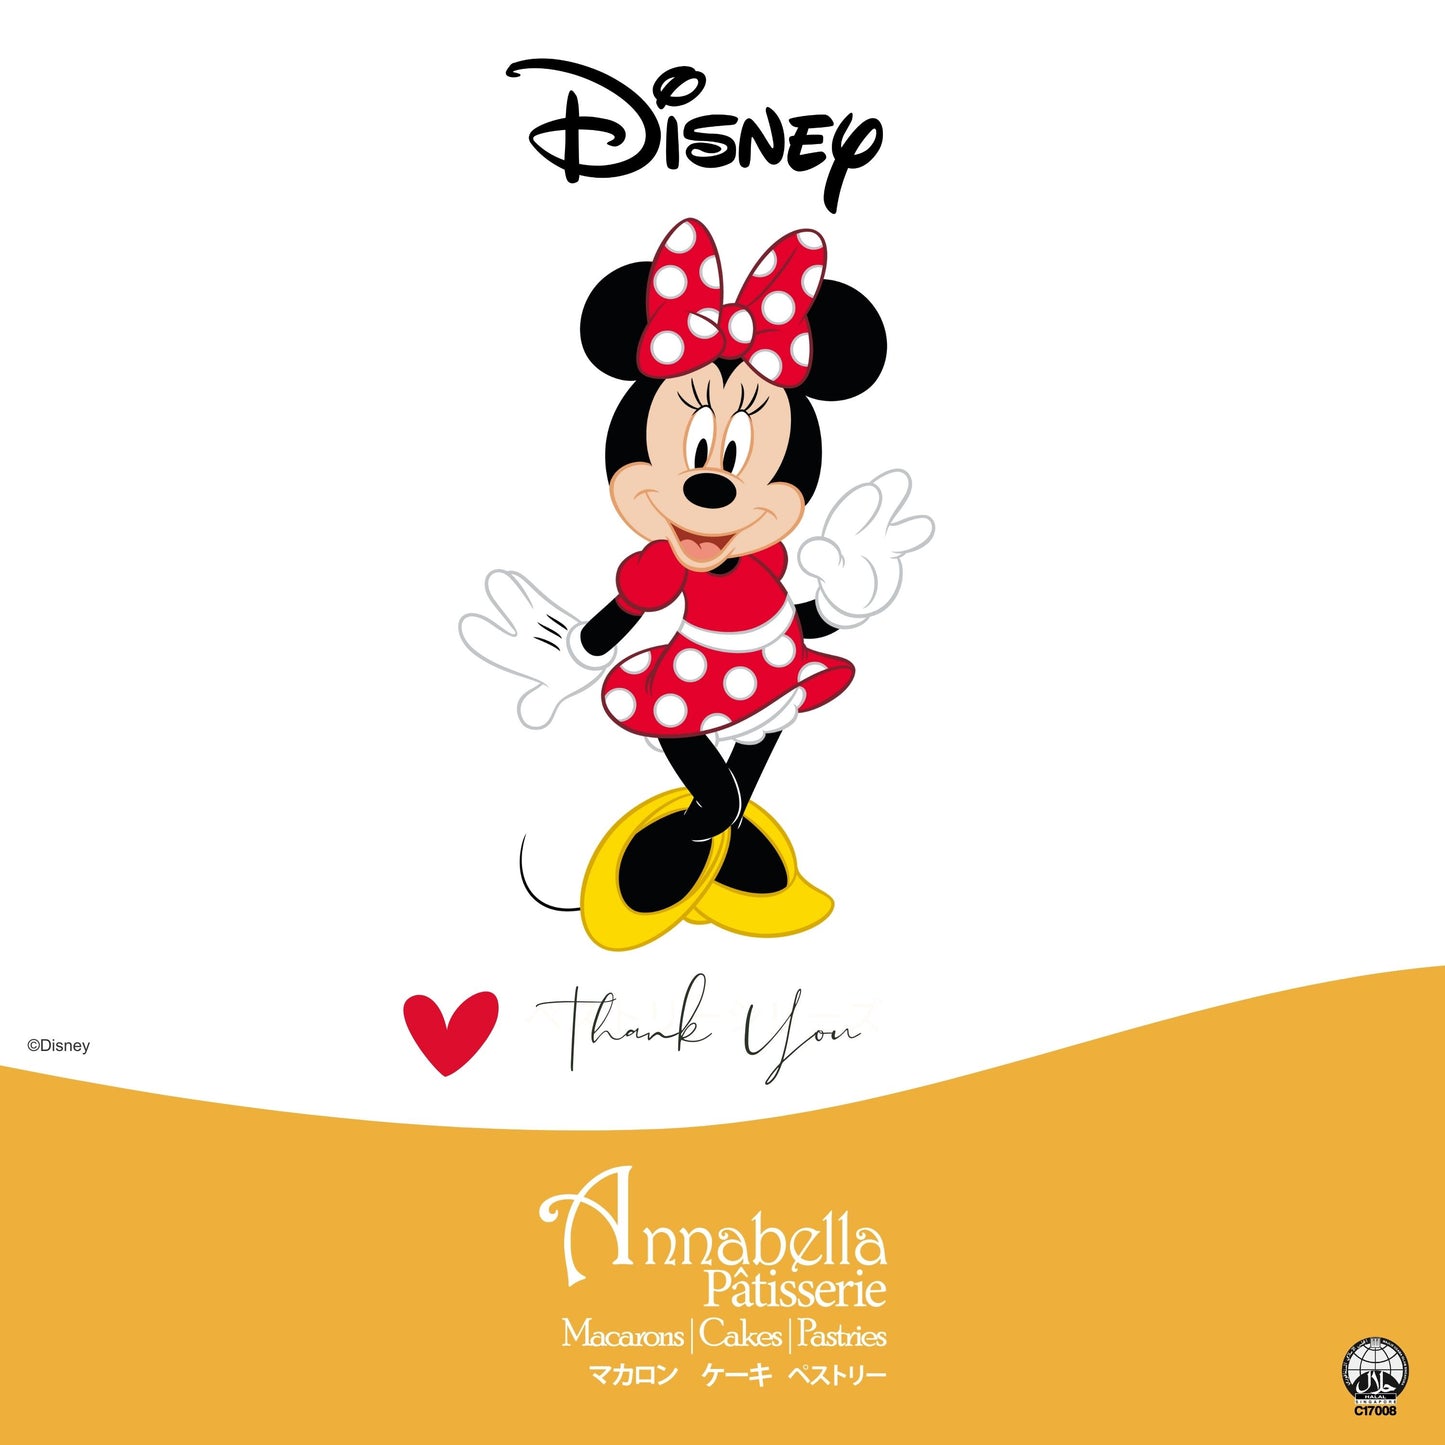 Disney Minnie Mouse Macaron Cakesicles Set | $55.80 Nett